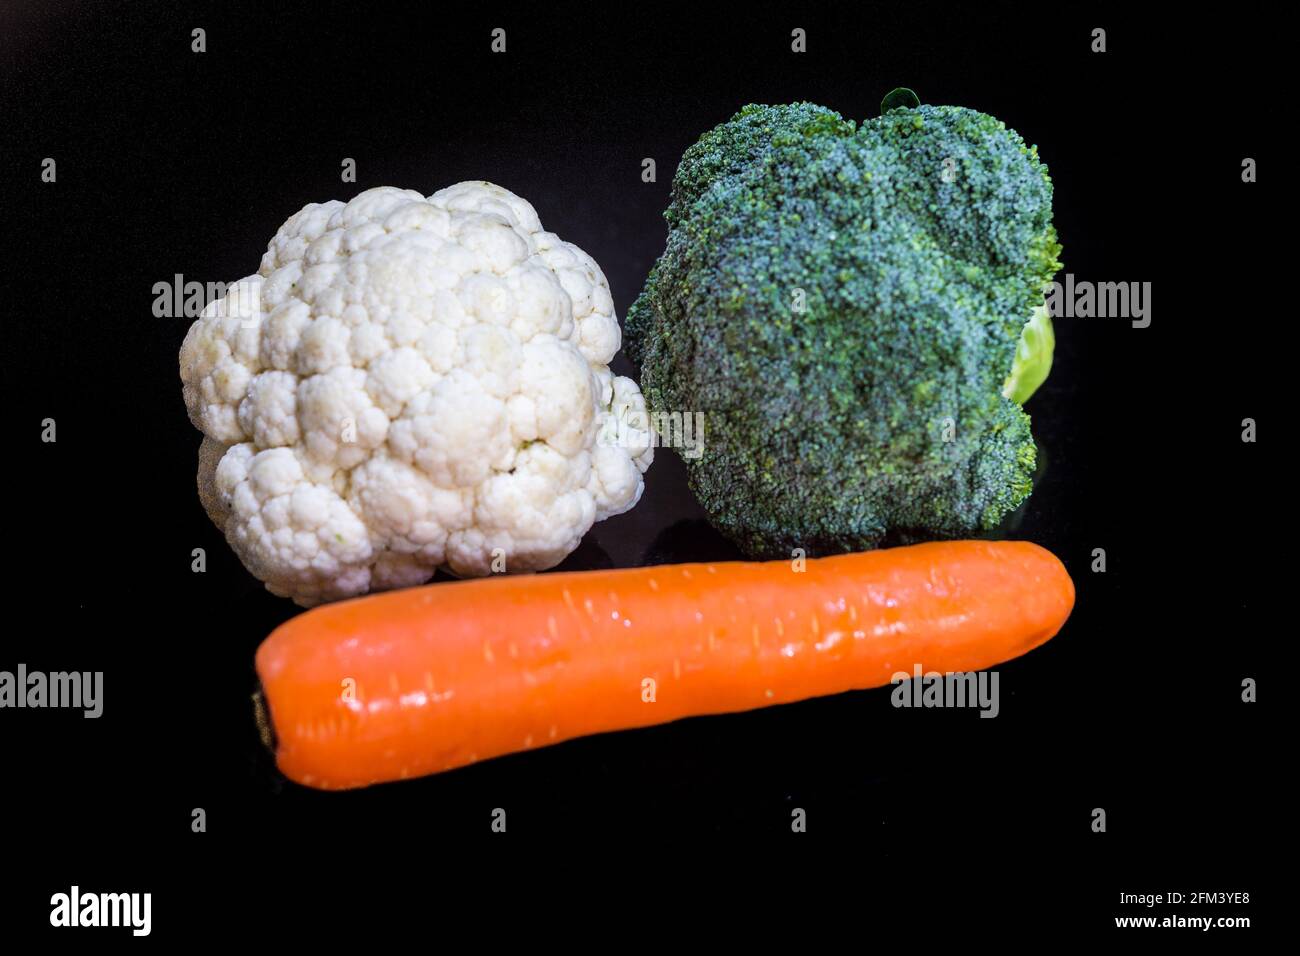 Tête de brocoli, chou-fleur et carotte sur fond noir Banque D'Images